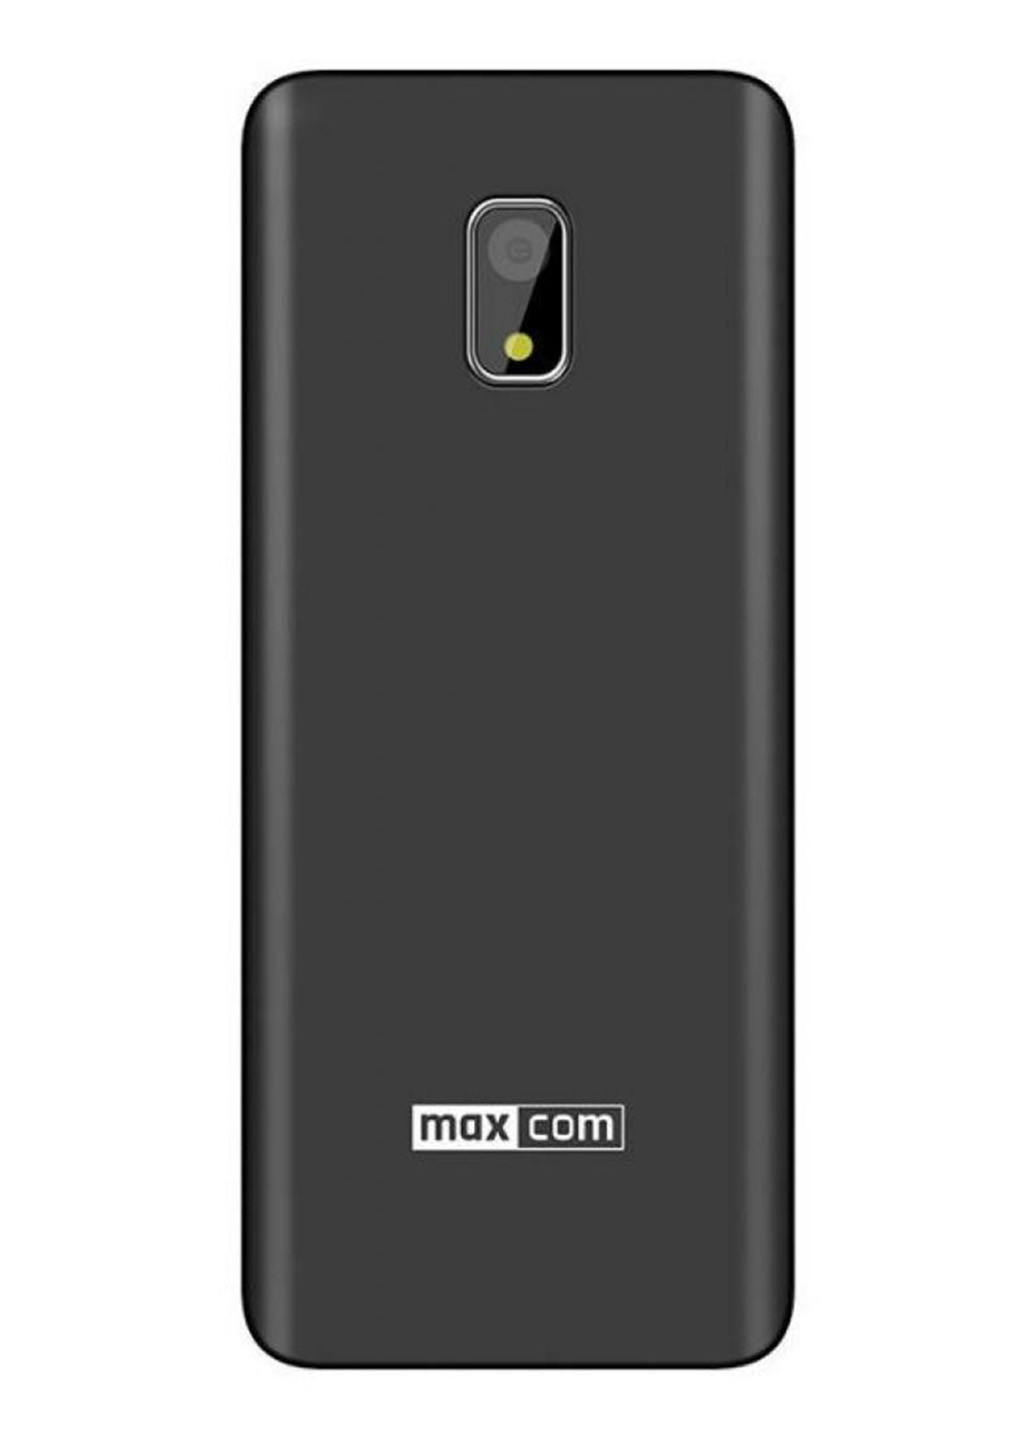 Мобільний телефон MM236 Black-SIlver Maxcom maxcom mm236 black-silver (132824476)